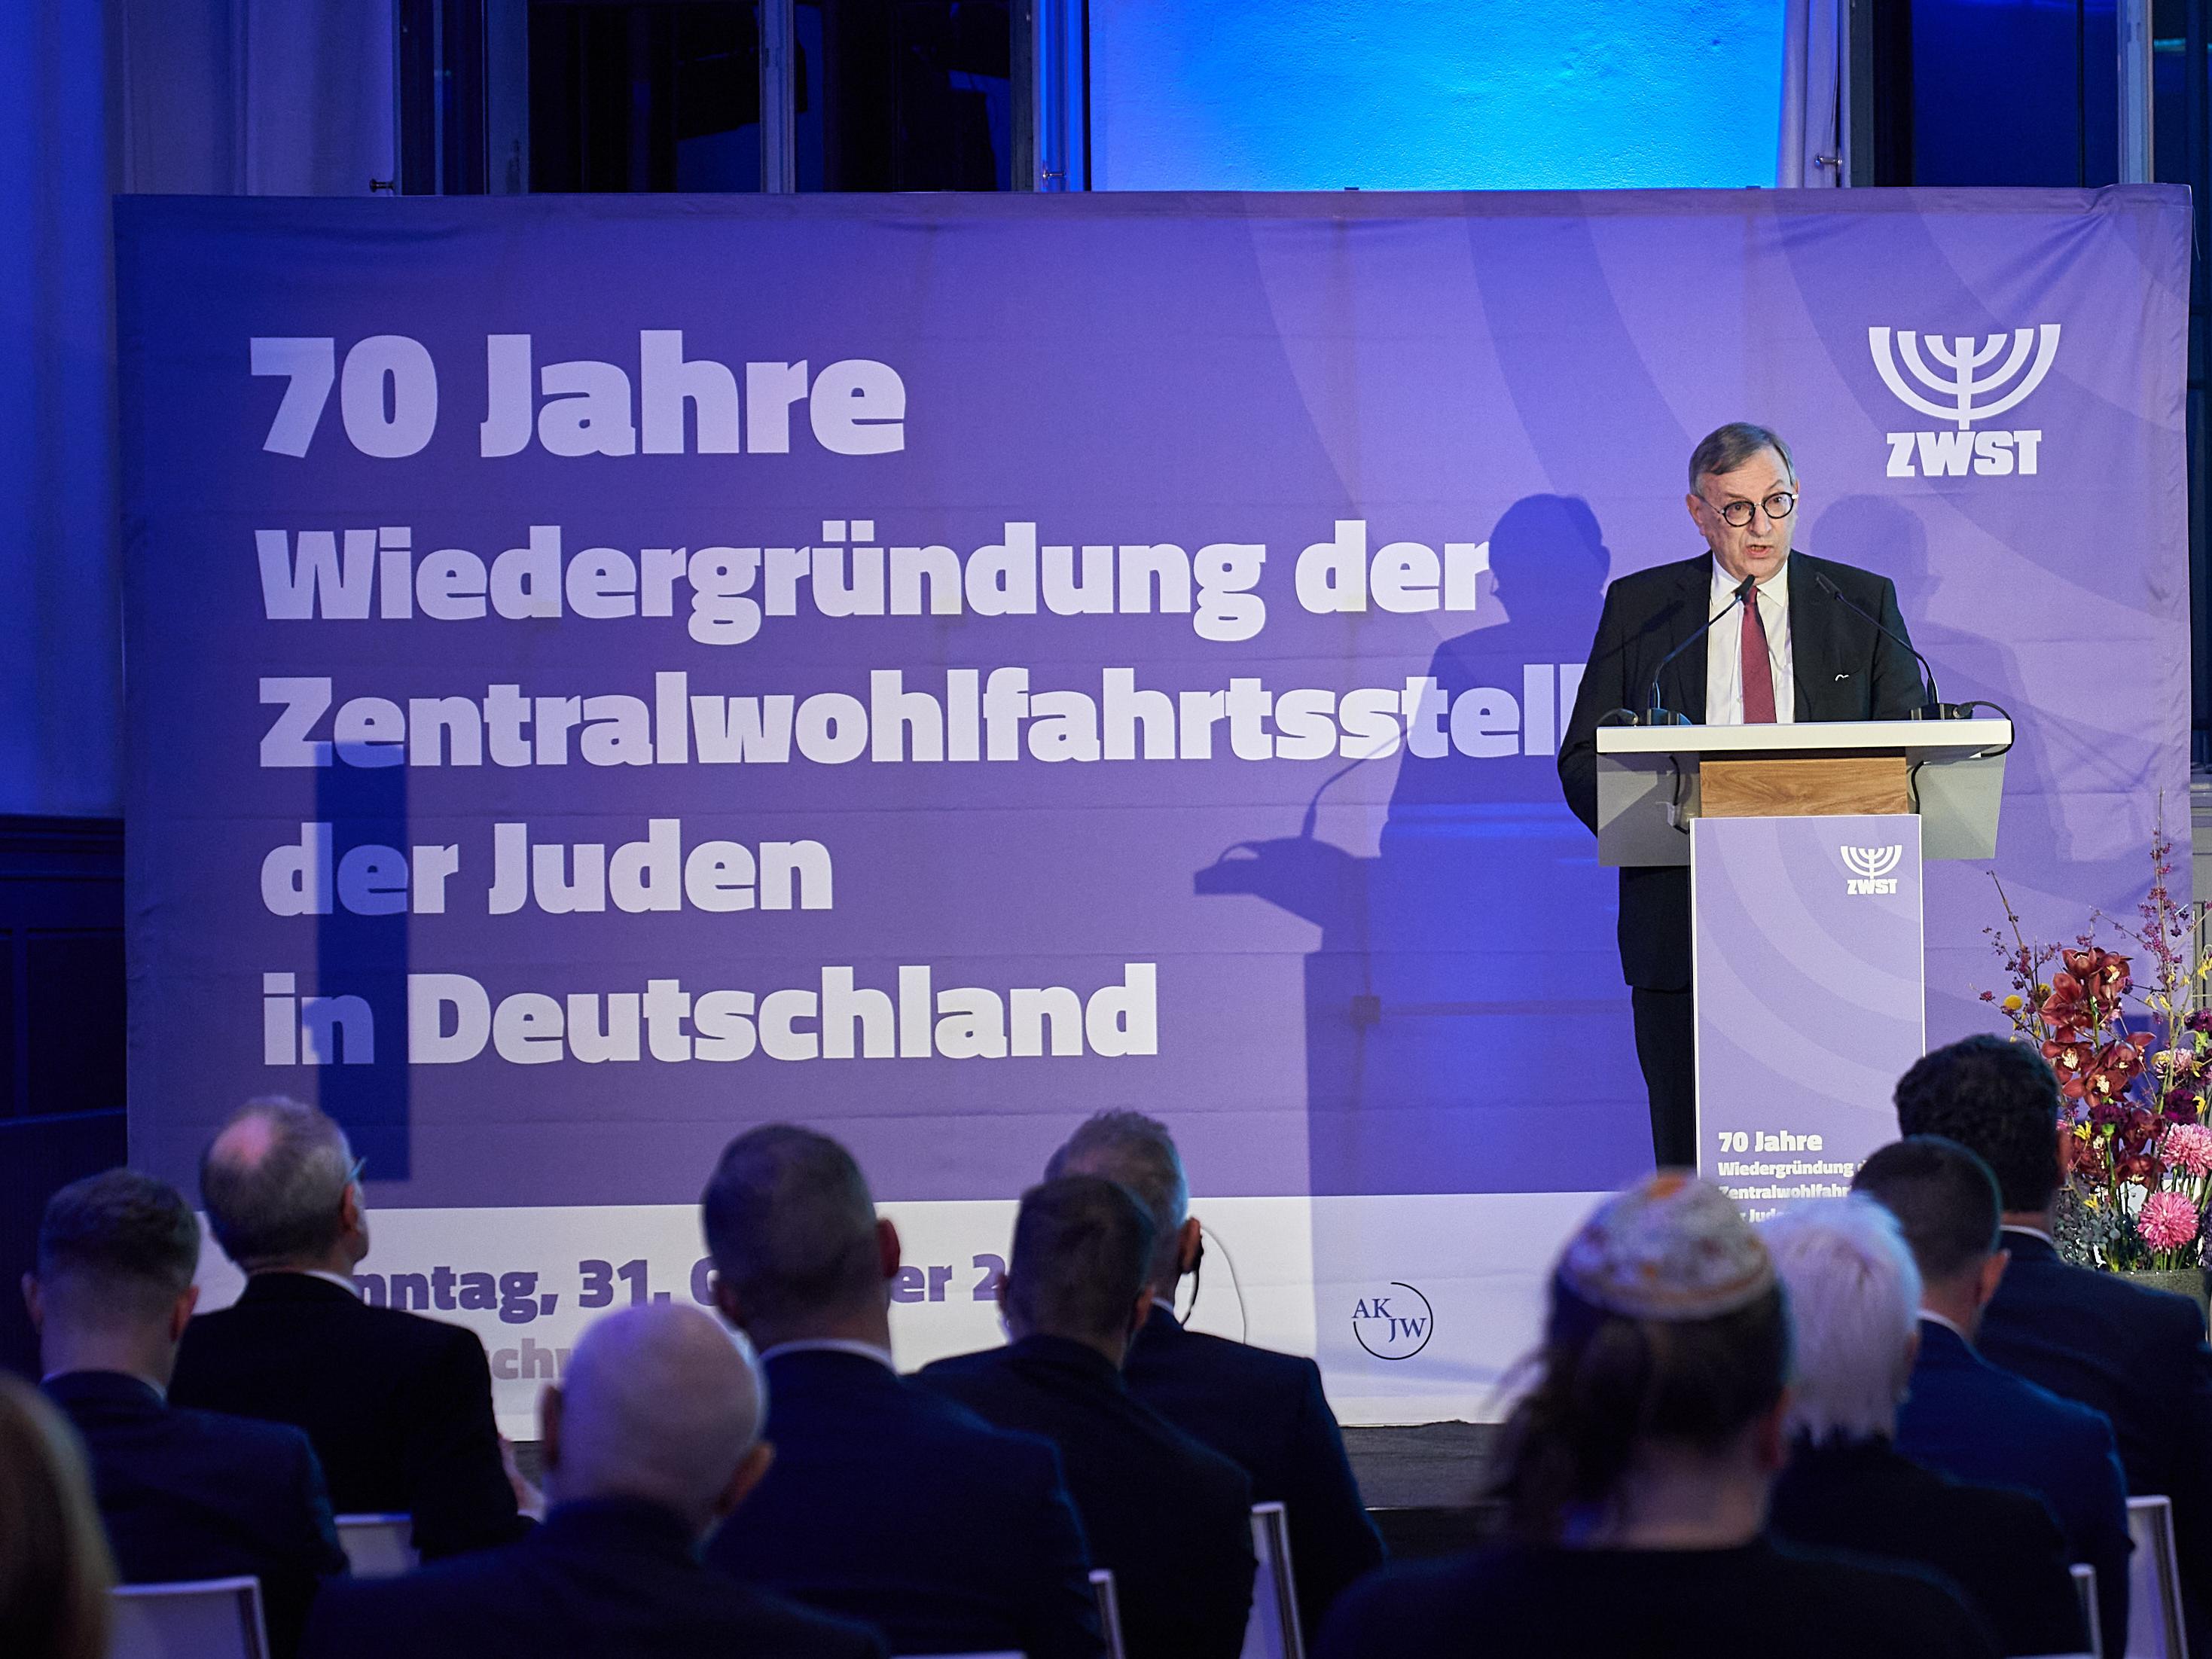 Auf einer Bühne hält Abraham Lehrer eine Rede. Hinter ihm steht ein Banner mit der Aufschrift: 70 Jahre Wiedergründung der Zentralwohlfahrtsstelle der Juden in Deutschland.